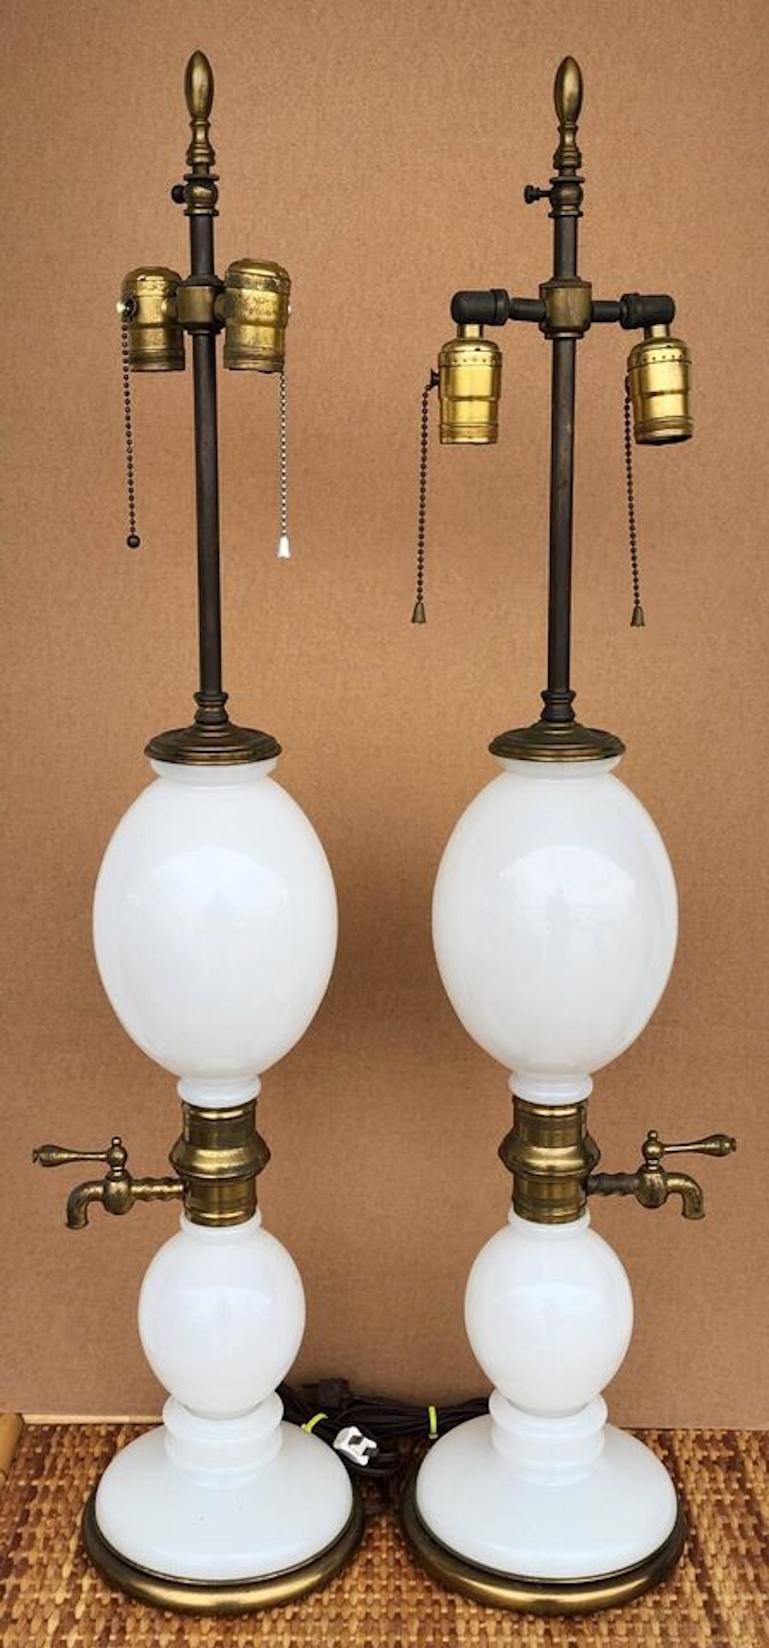 Mid-20th Century Opaline Seltzer Bottle Lamps by Warren Kessler